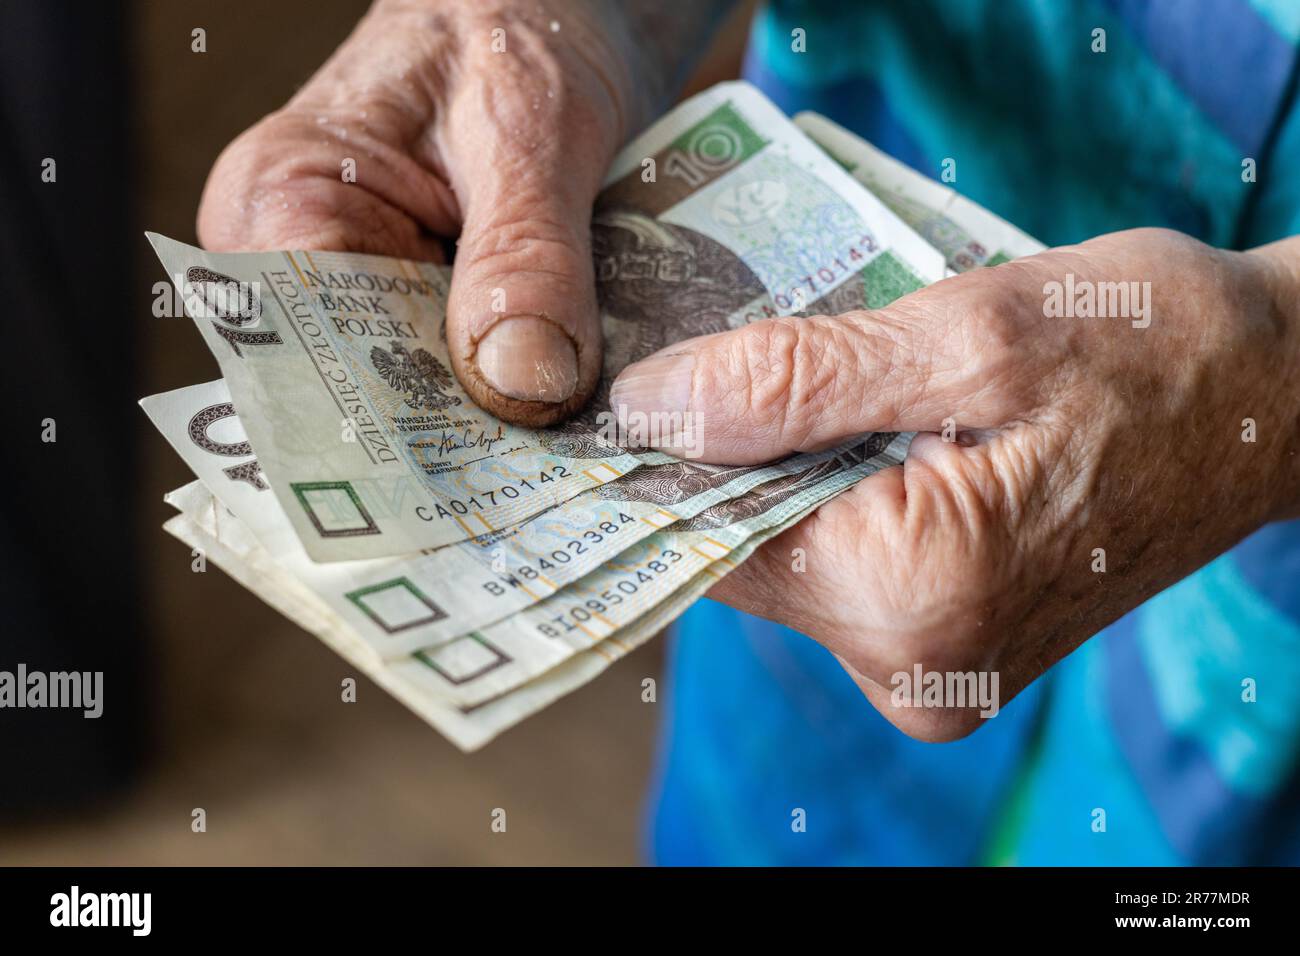 Die polnische Rentnerin hält mehrere Banknoten niedriger Stückelung in ihren Händen, die Lebenshaltungskosten eines Senioren in Polen, Geld polnischer Zloty, finanzielle CO Stockfoto